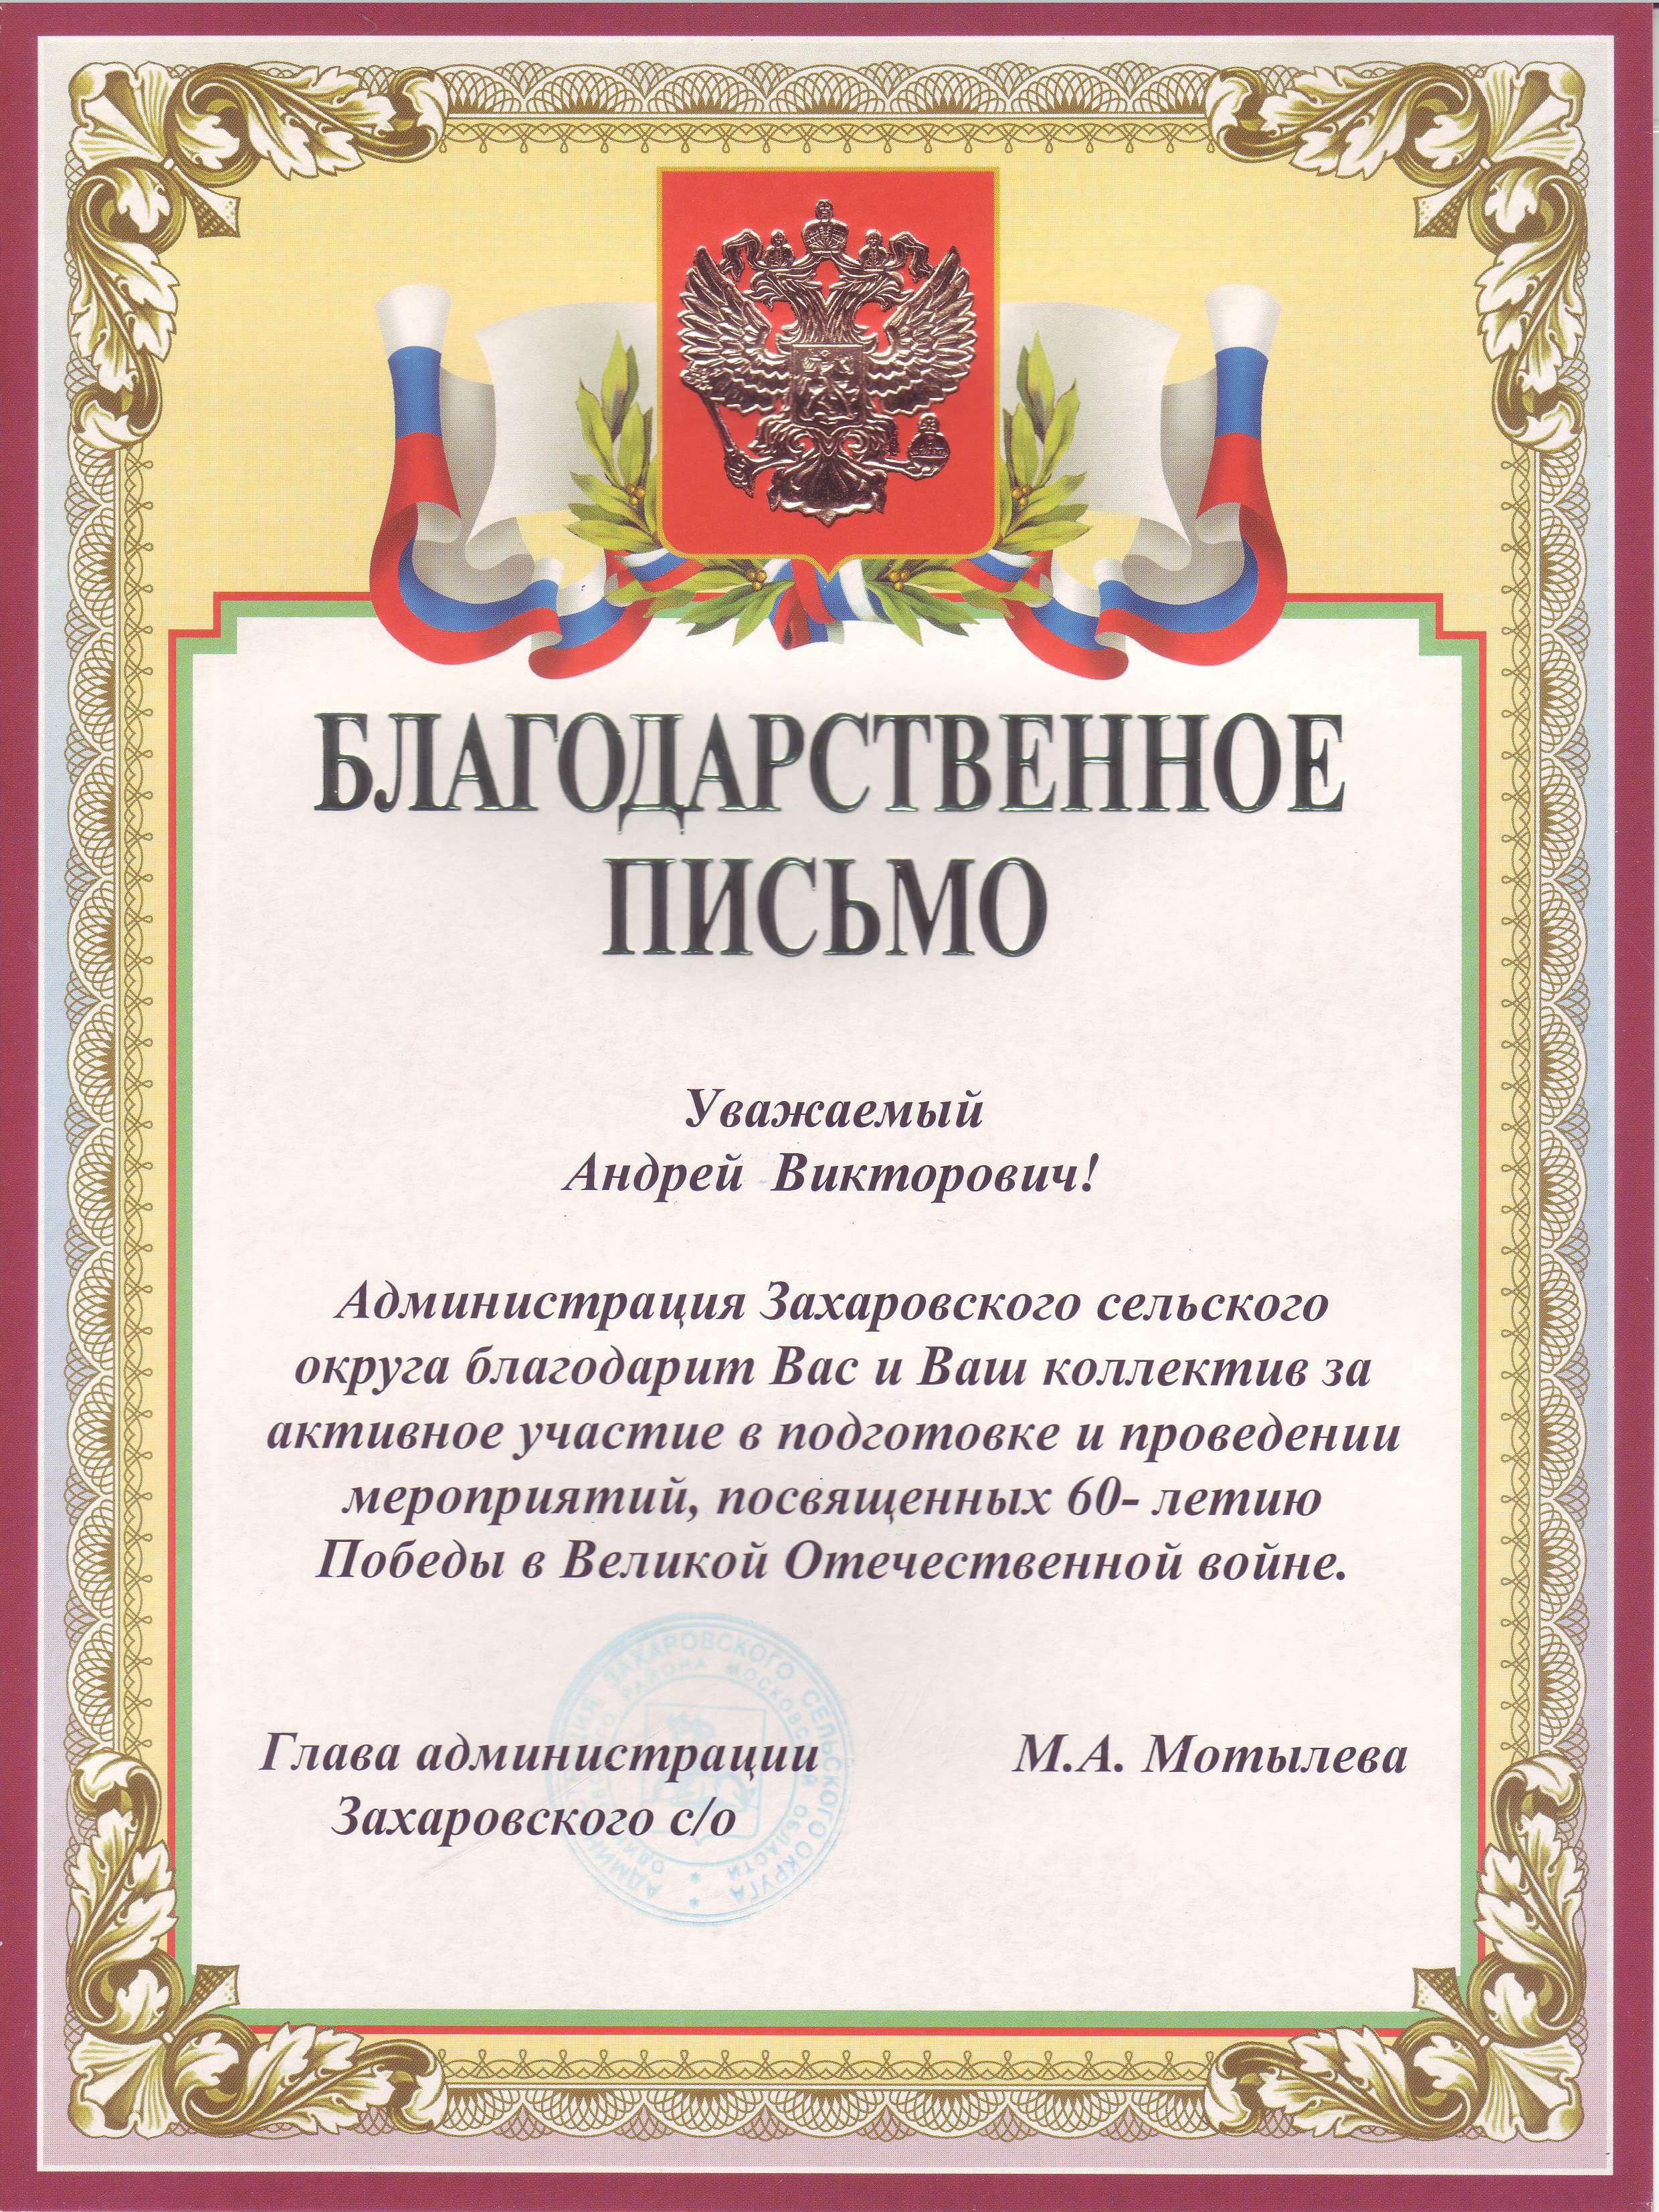 Глава администрации Захаровского сельского округа М.А.Мотылева.